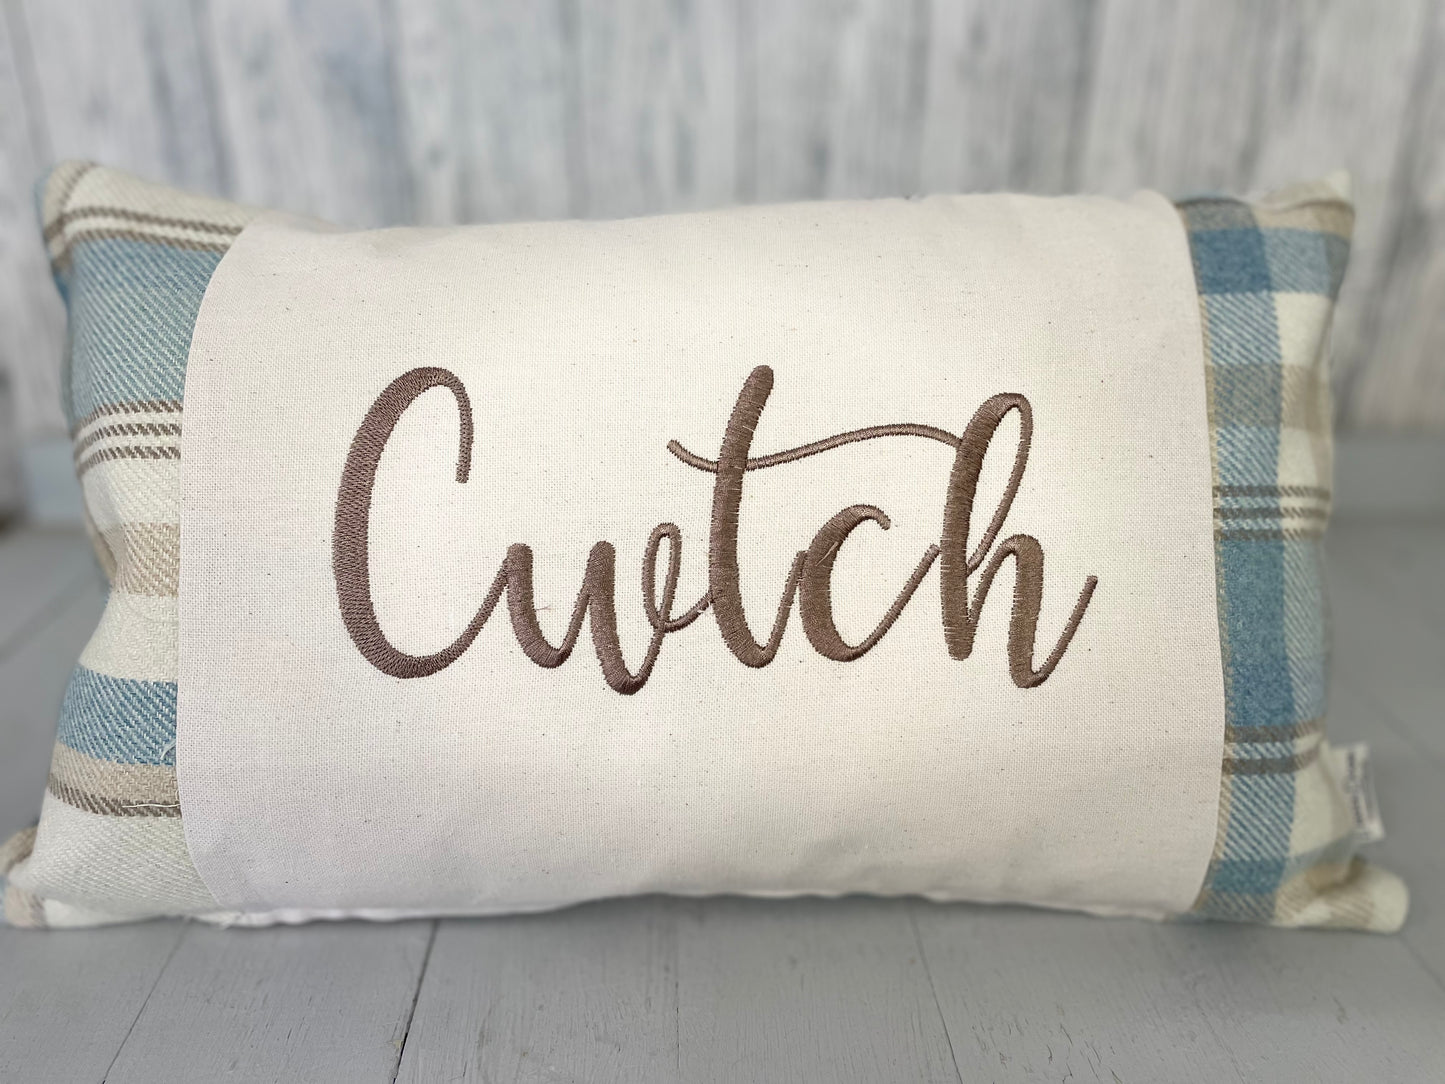 Cwtsh Cushion- Wool Touch Cwtch Rectangle Cushion